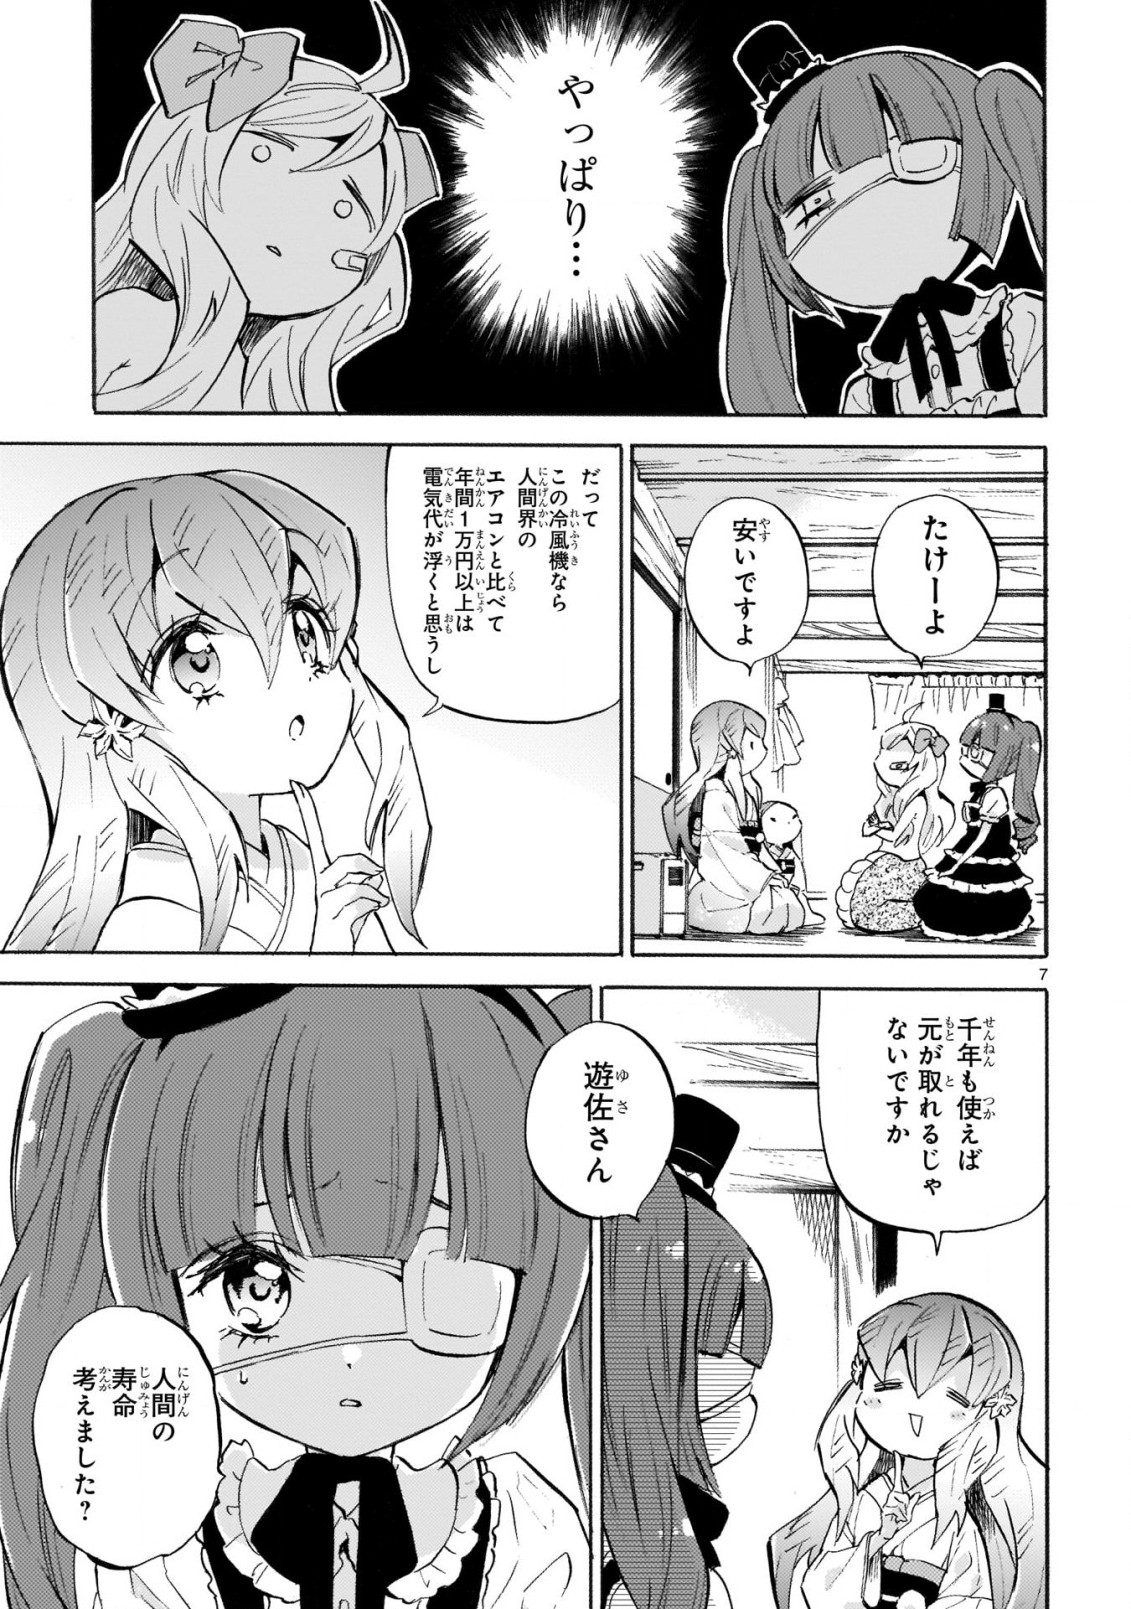 Jashin-chan Dropkick - Chapter 220 - Page 7